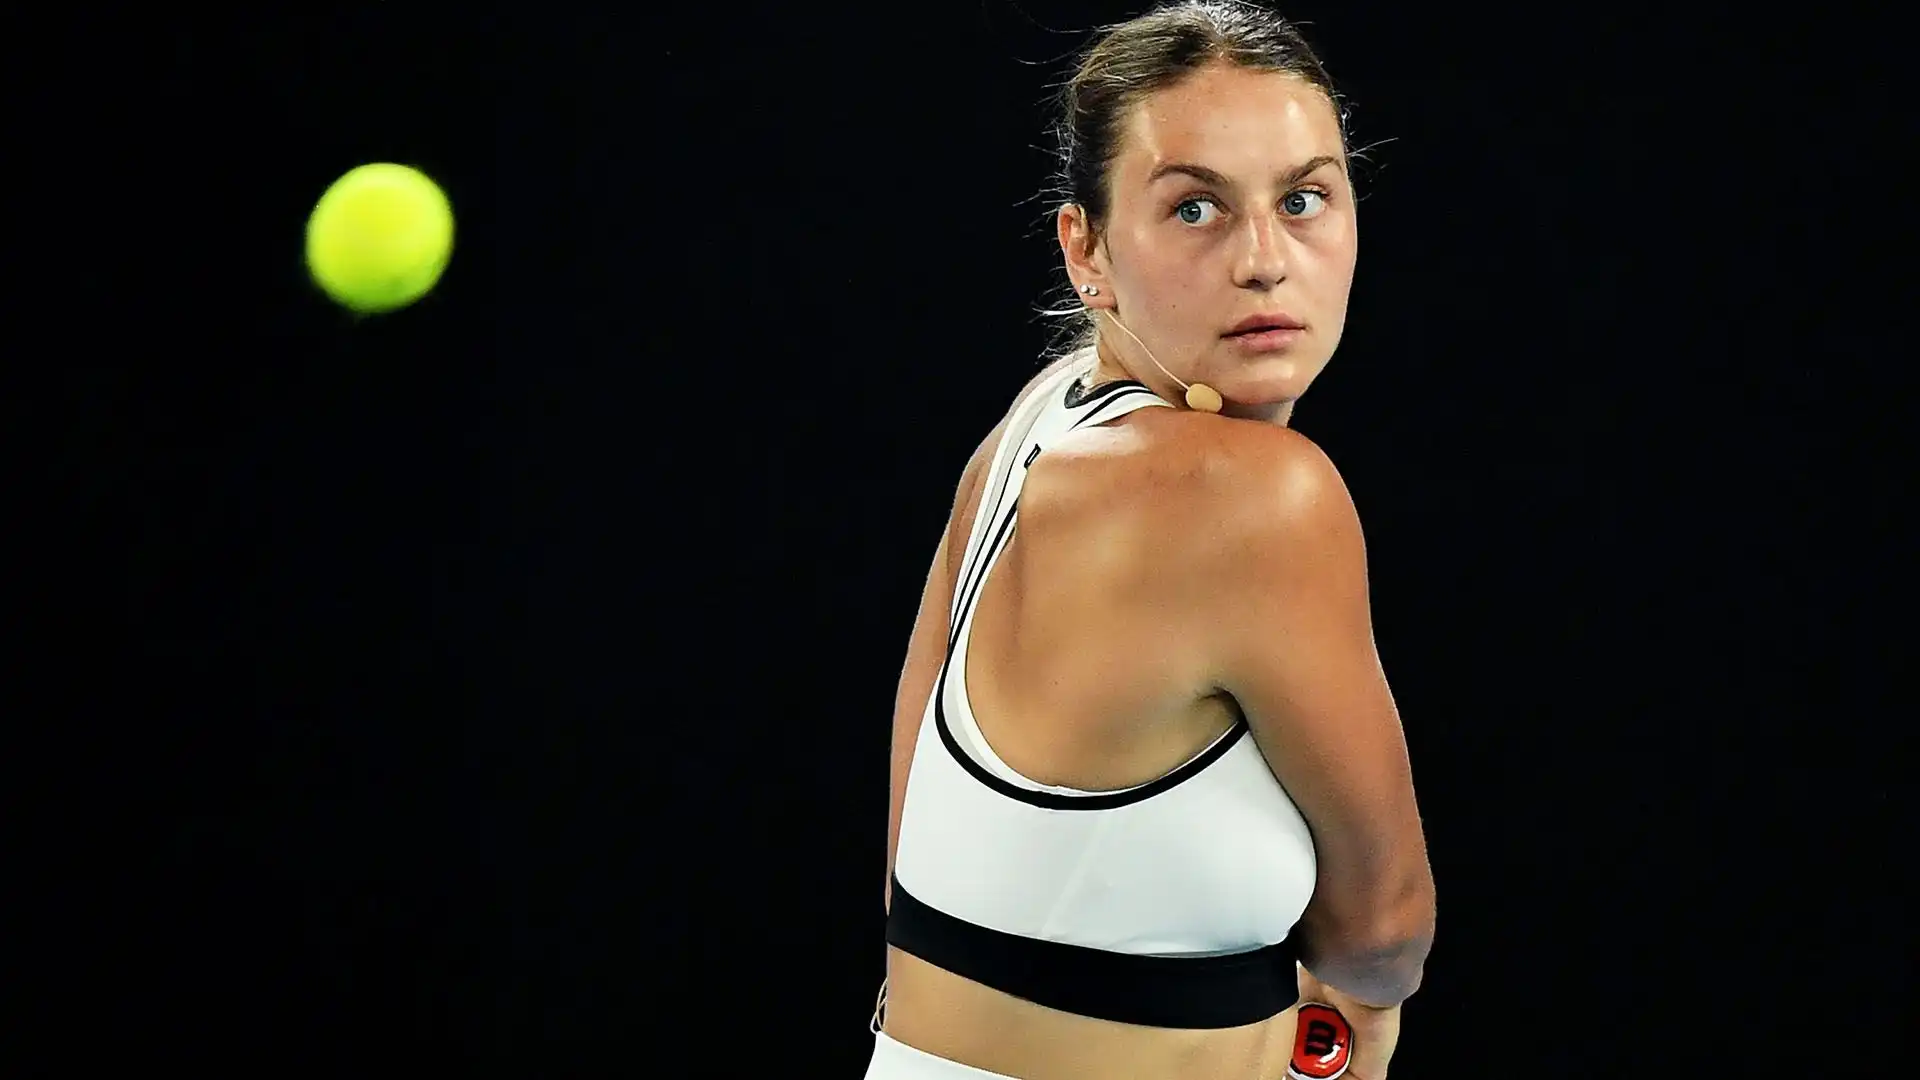 "Kostyuk è la nuova stella del tennis ucraino, in cui vengono riposte grandi speranze", ha scritto Vouge